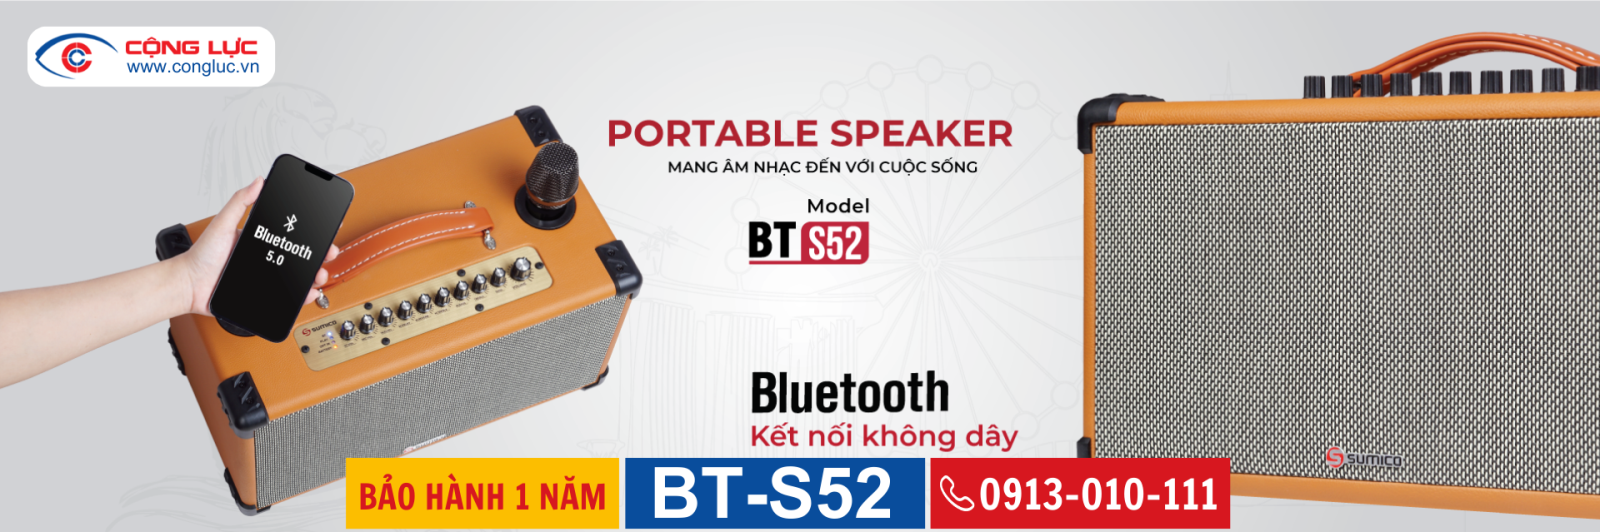 Bán loa karaoke di động sumico BT-S52 chính hãng giá rẻ nhất tại Hải Phòng 7